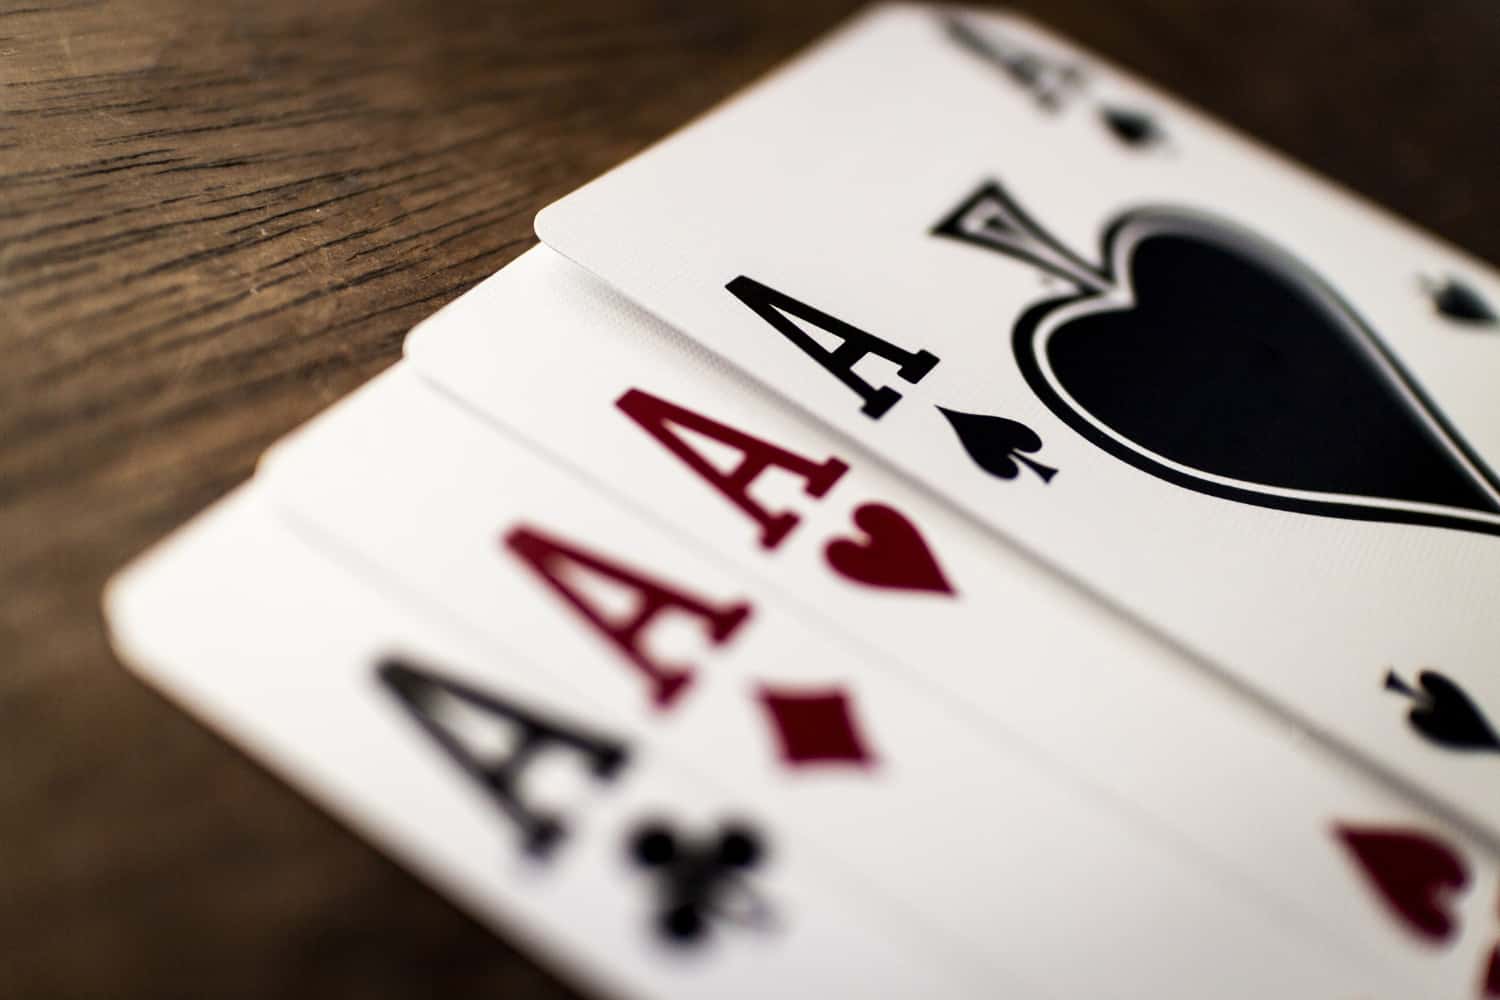 Bet365 casino - uma plataforma segura e divertida | e5ffeea7 cartas | married games dicas/guias | apostas, bet365, cassino online, jogo online, multiplayer, pc, poquer, roleta, slot machine | bet365 casino